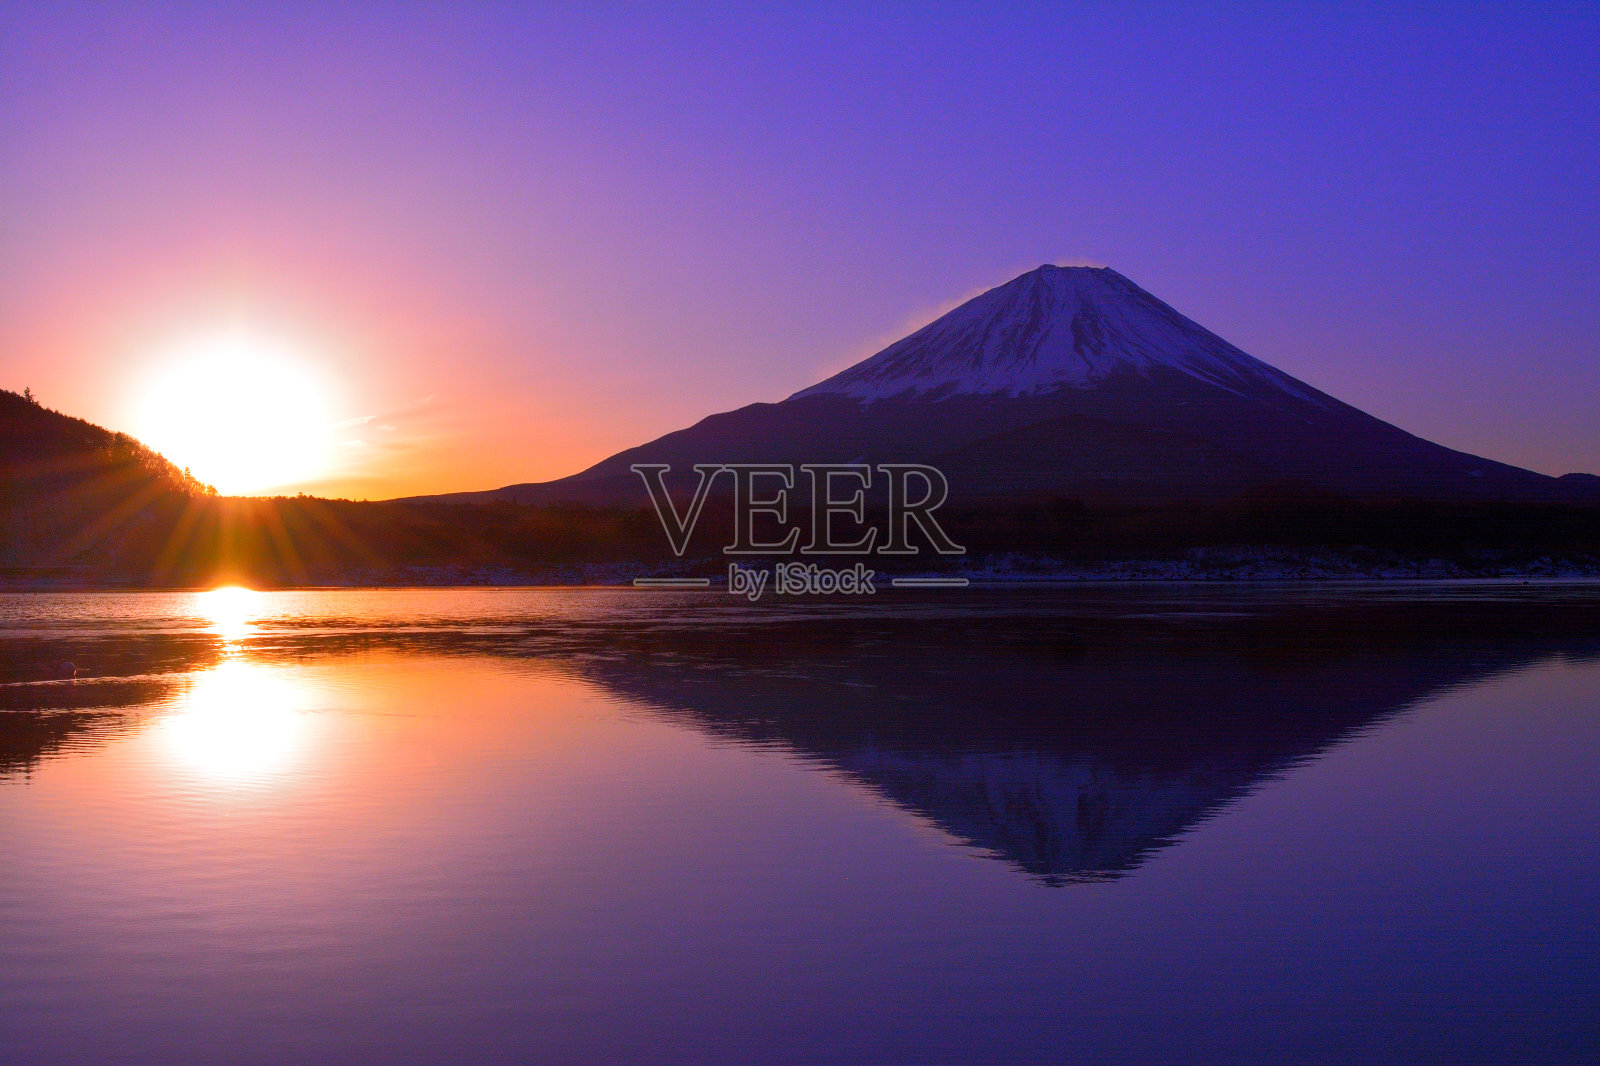 富士山的日出从元津湖日本01/26/2018照片摄影图片